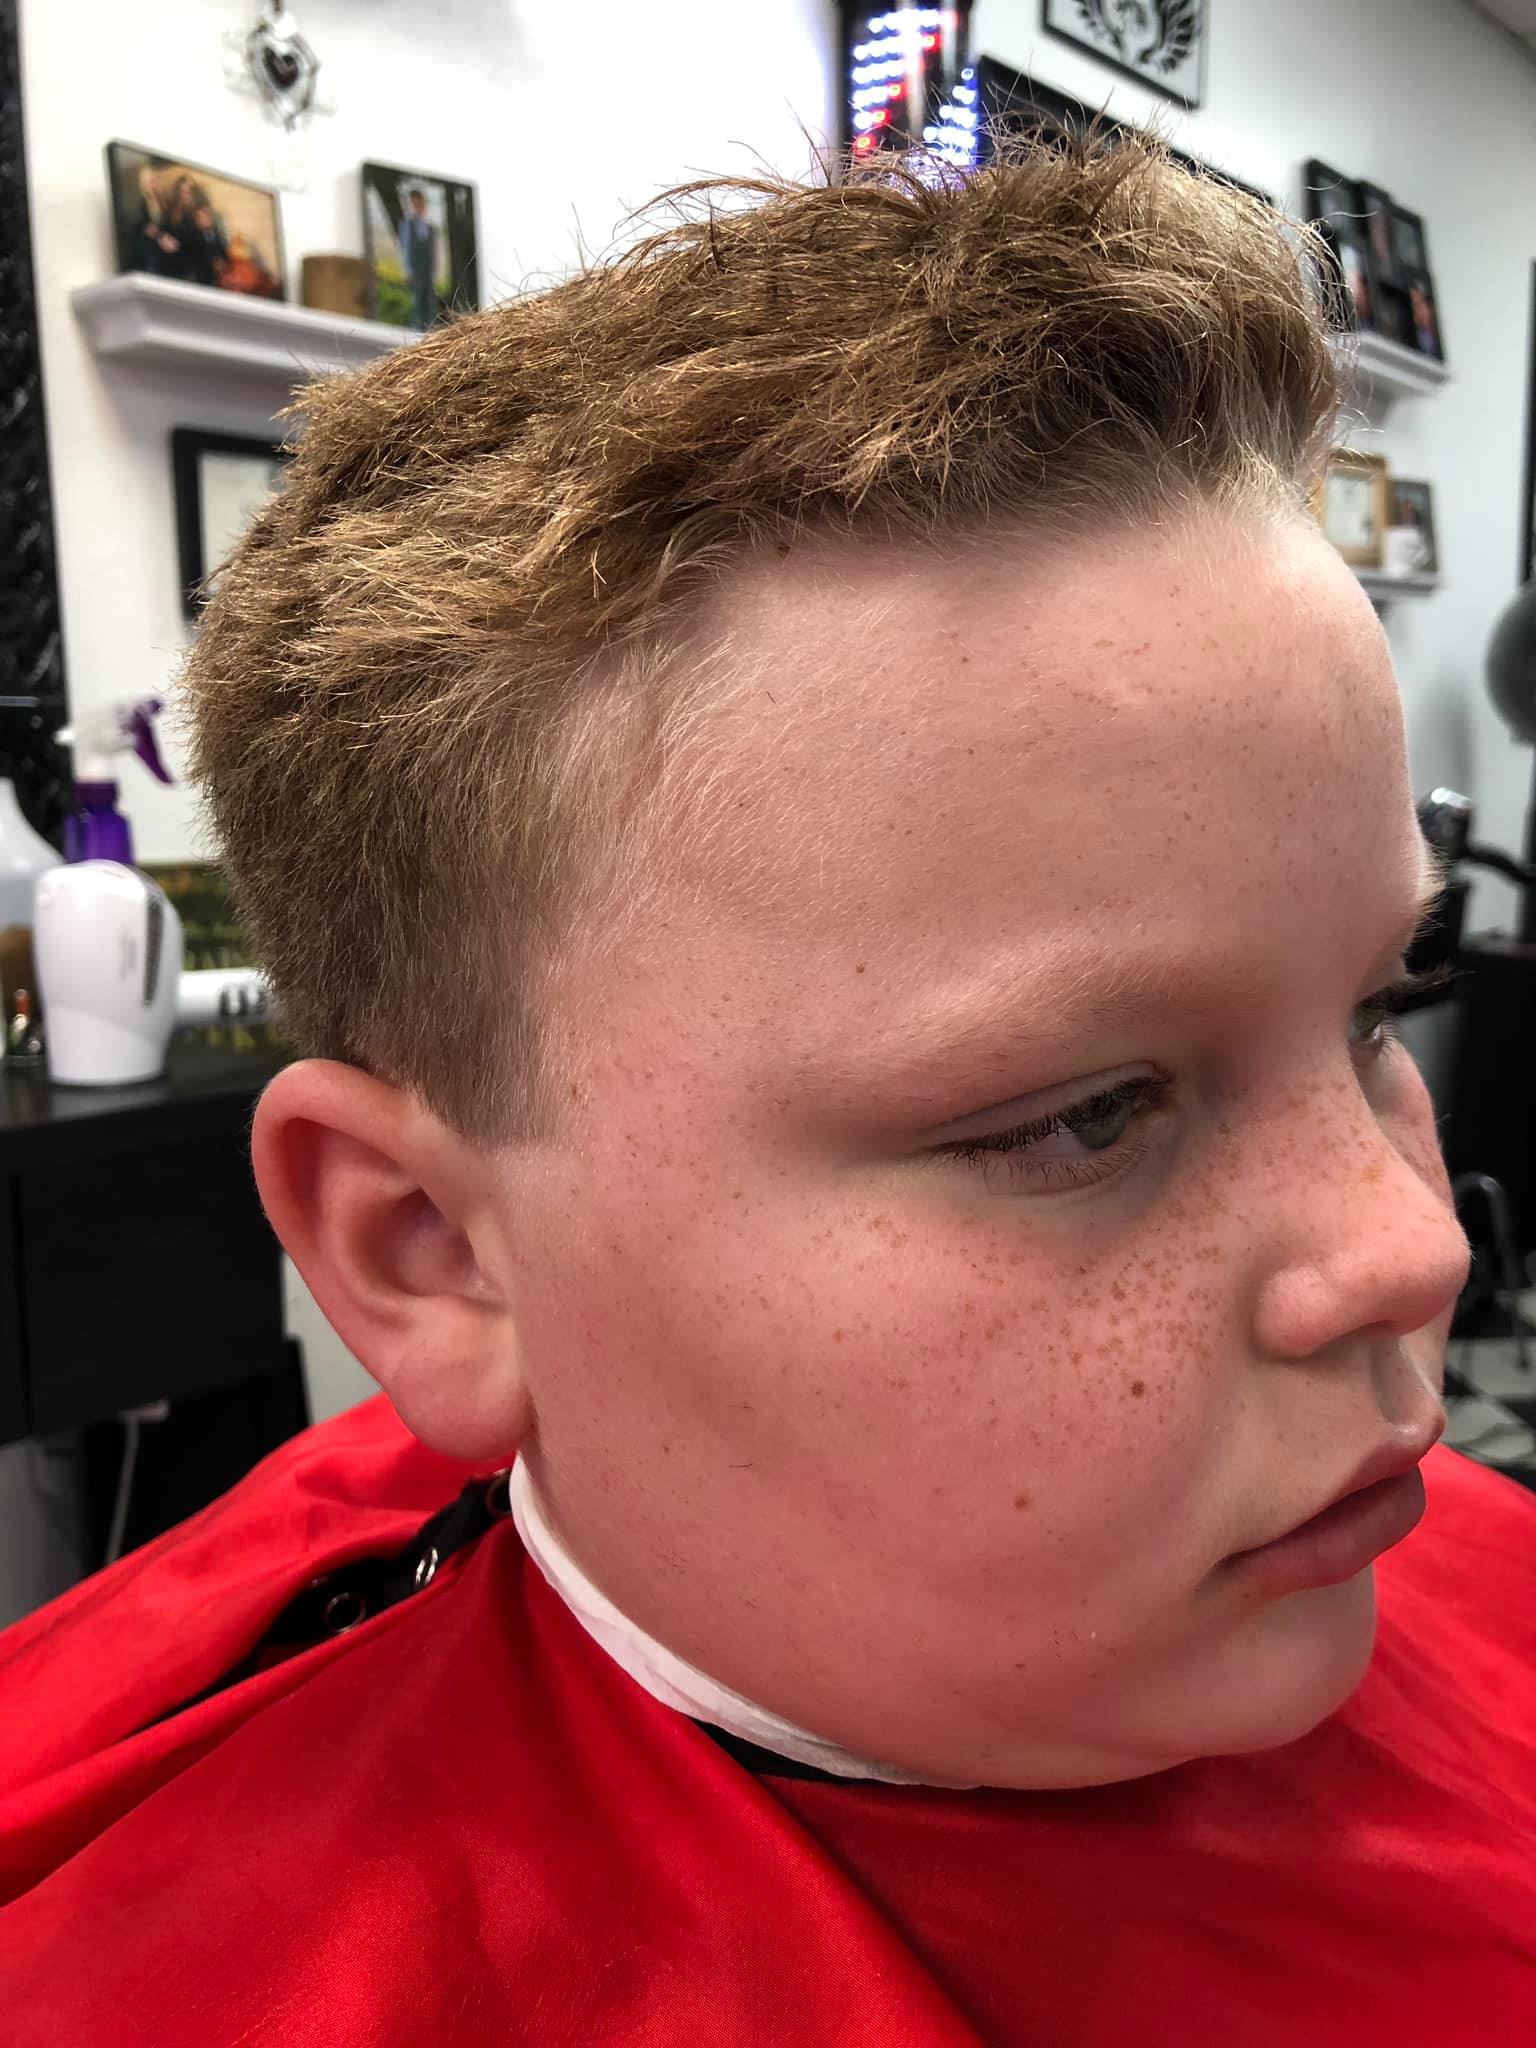 Cut ‘N’ Up Barbershop